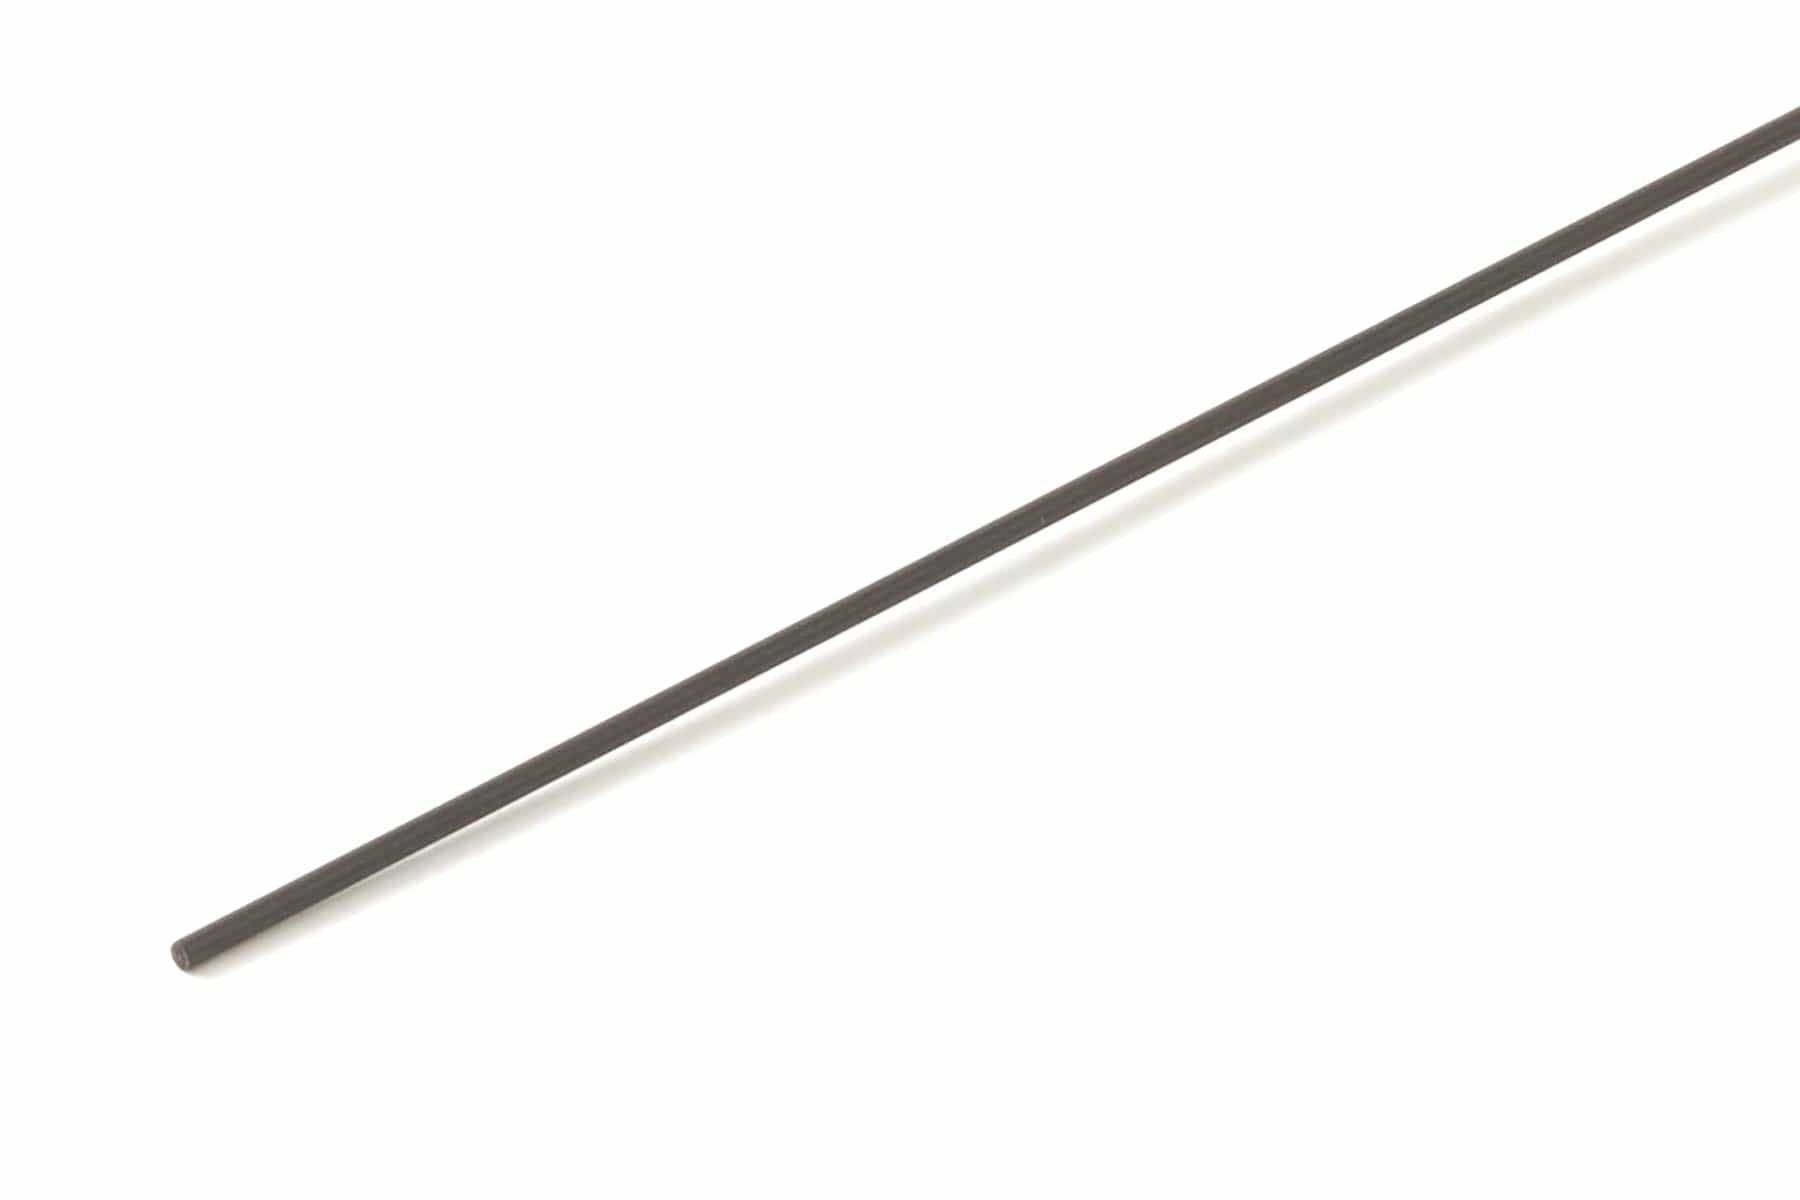 BenchCraft 1.2mm Solid Carbon Fiber Rod (1 Meter) BCT5051-002